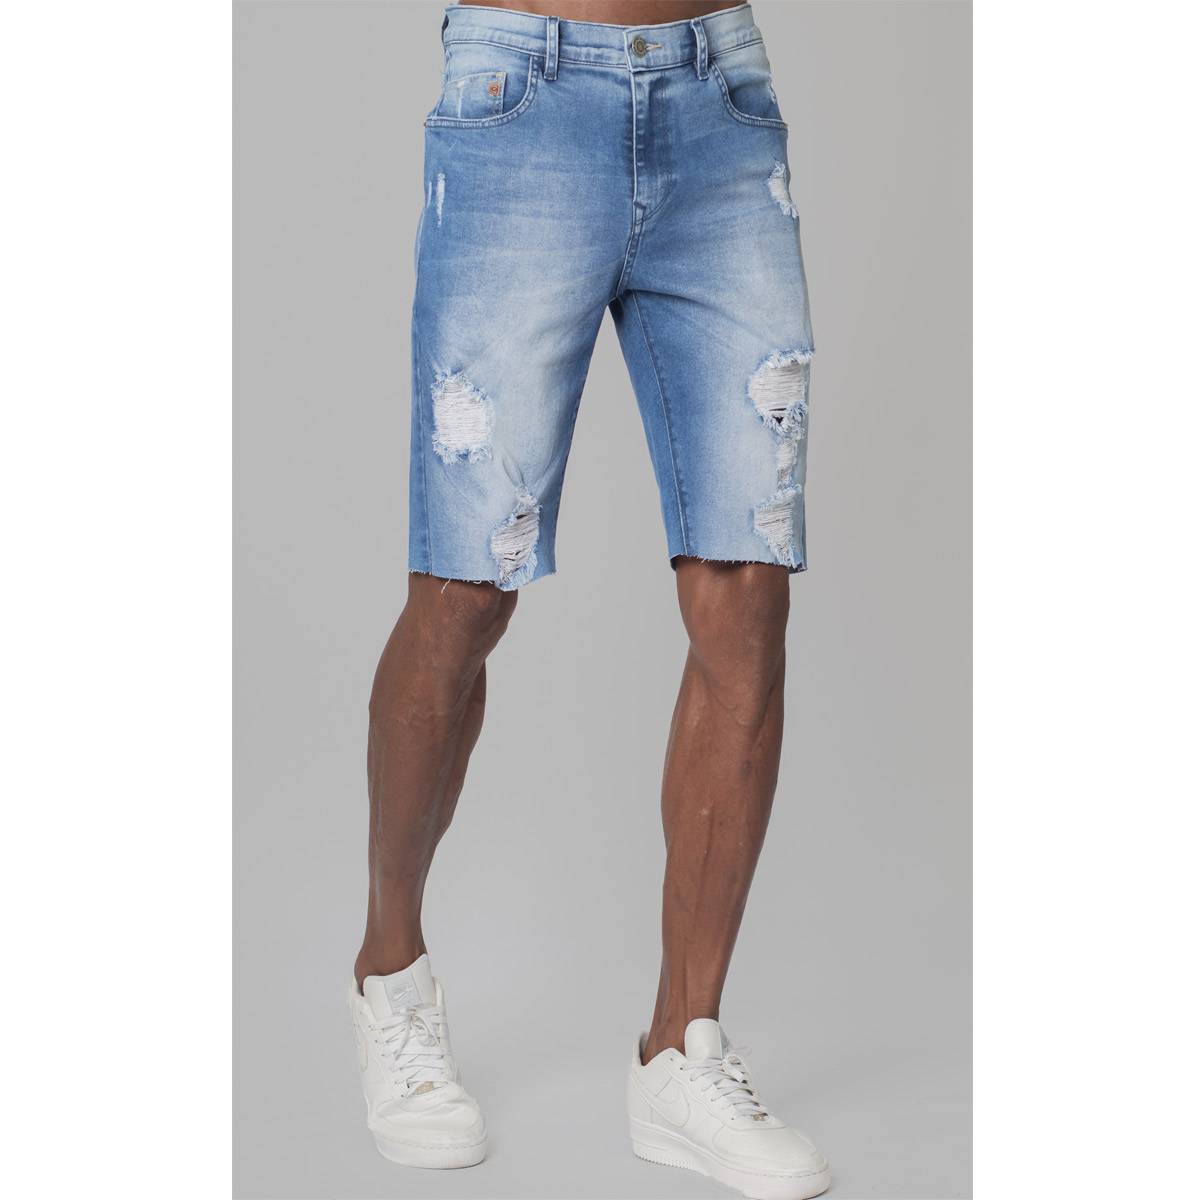 Bermuda Jeans Masculina Gangster 17.31.0473